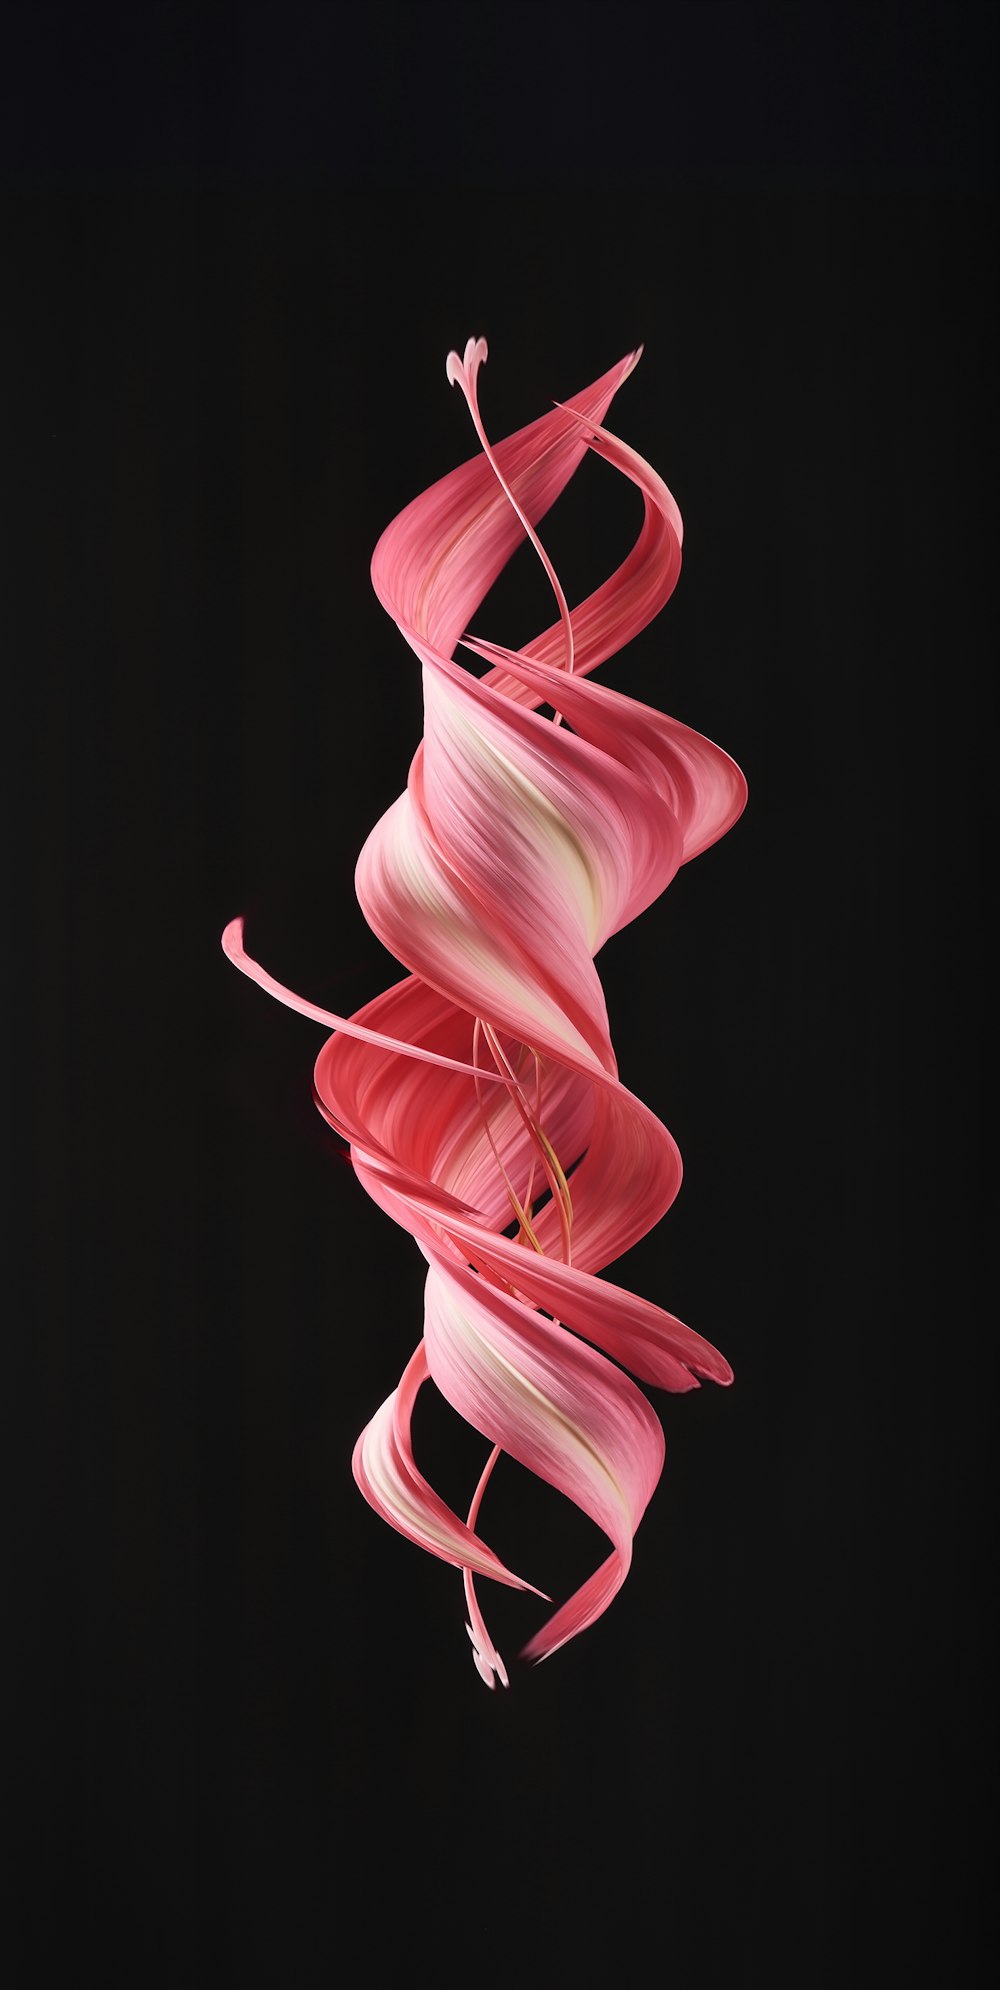 Una espiral de pelo rosa sobre un fondo negro